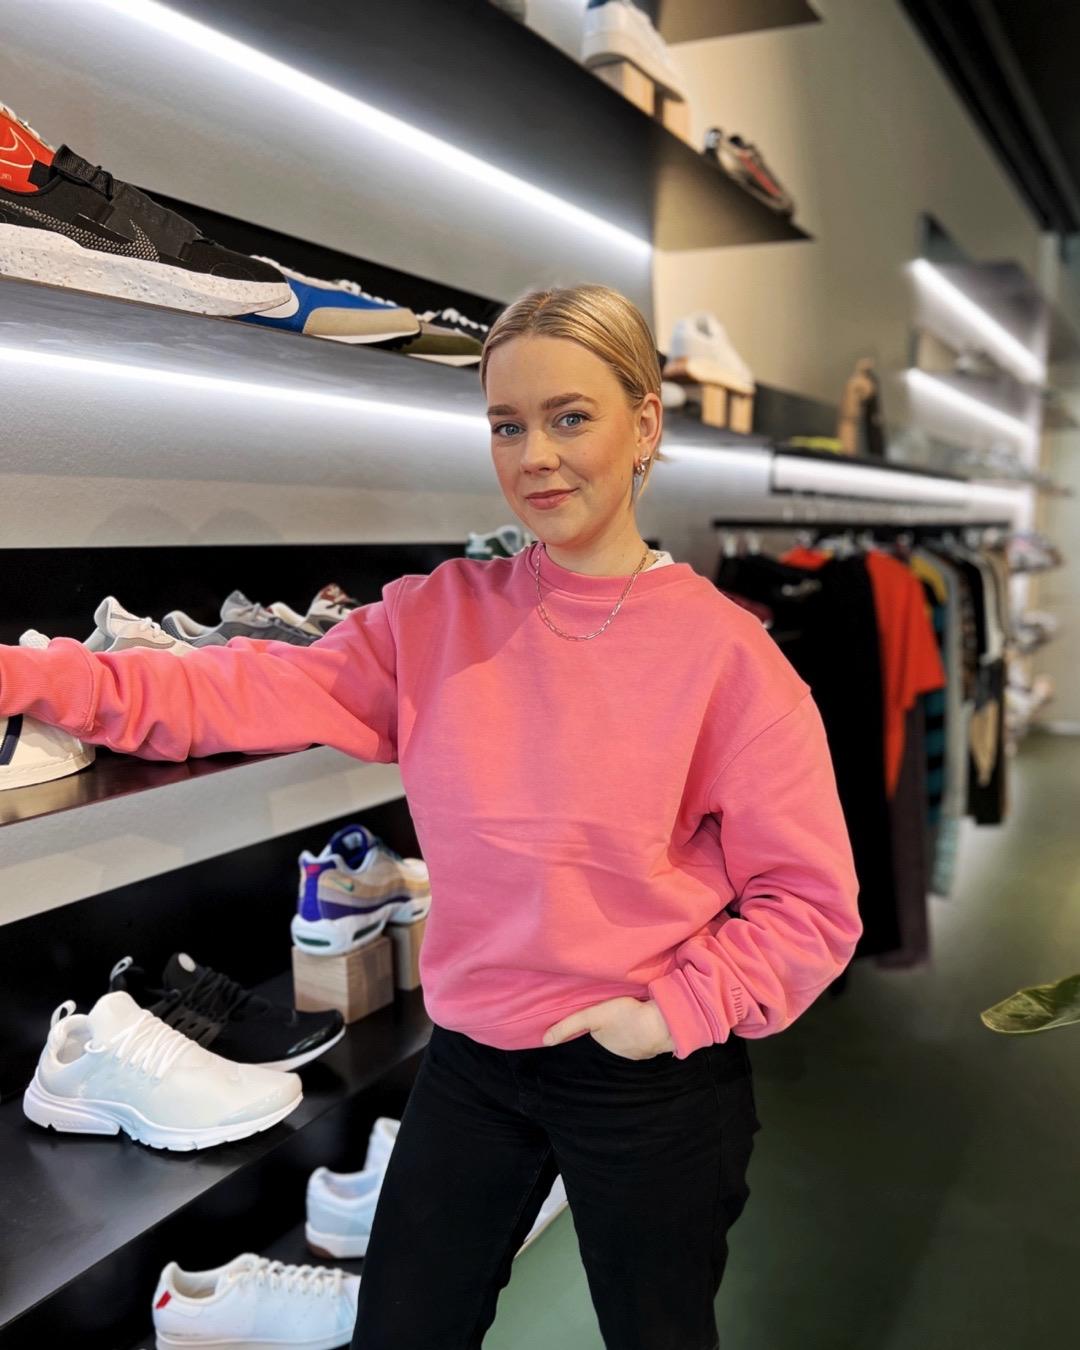 TRENDER SOM VARER: Helene Henriksen hos Tennis sier kundene deres er opptatt av å gå for sko som faller innenfor en trendkategori som gjerne varer litt.